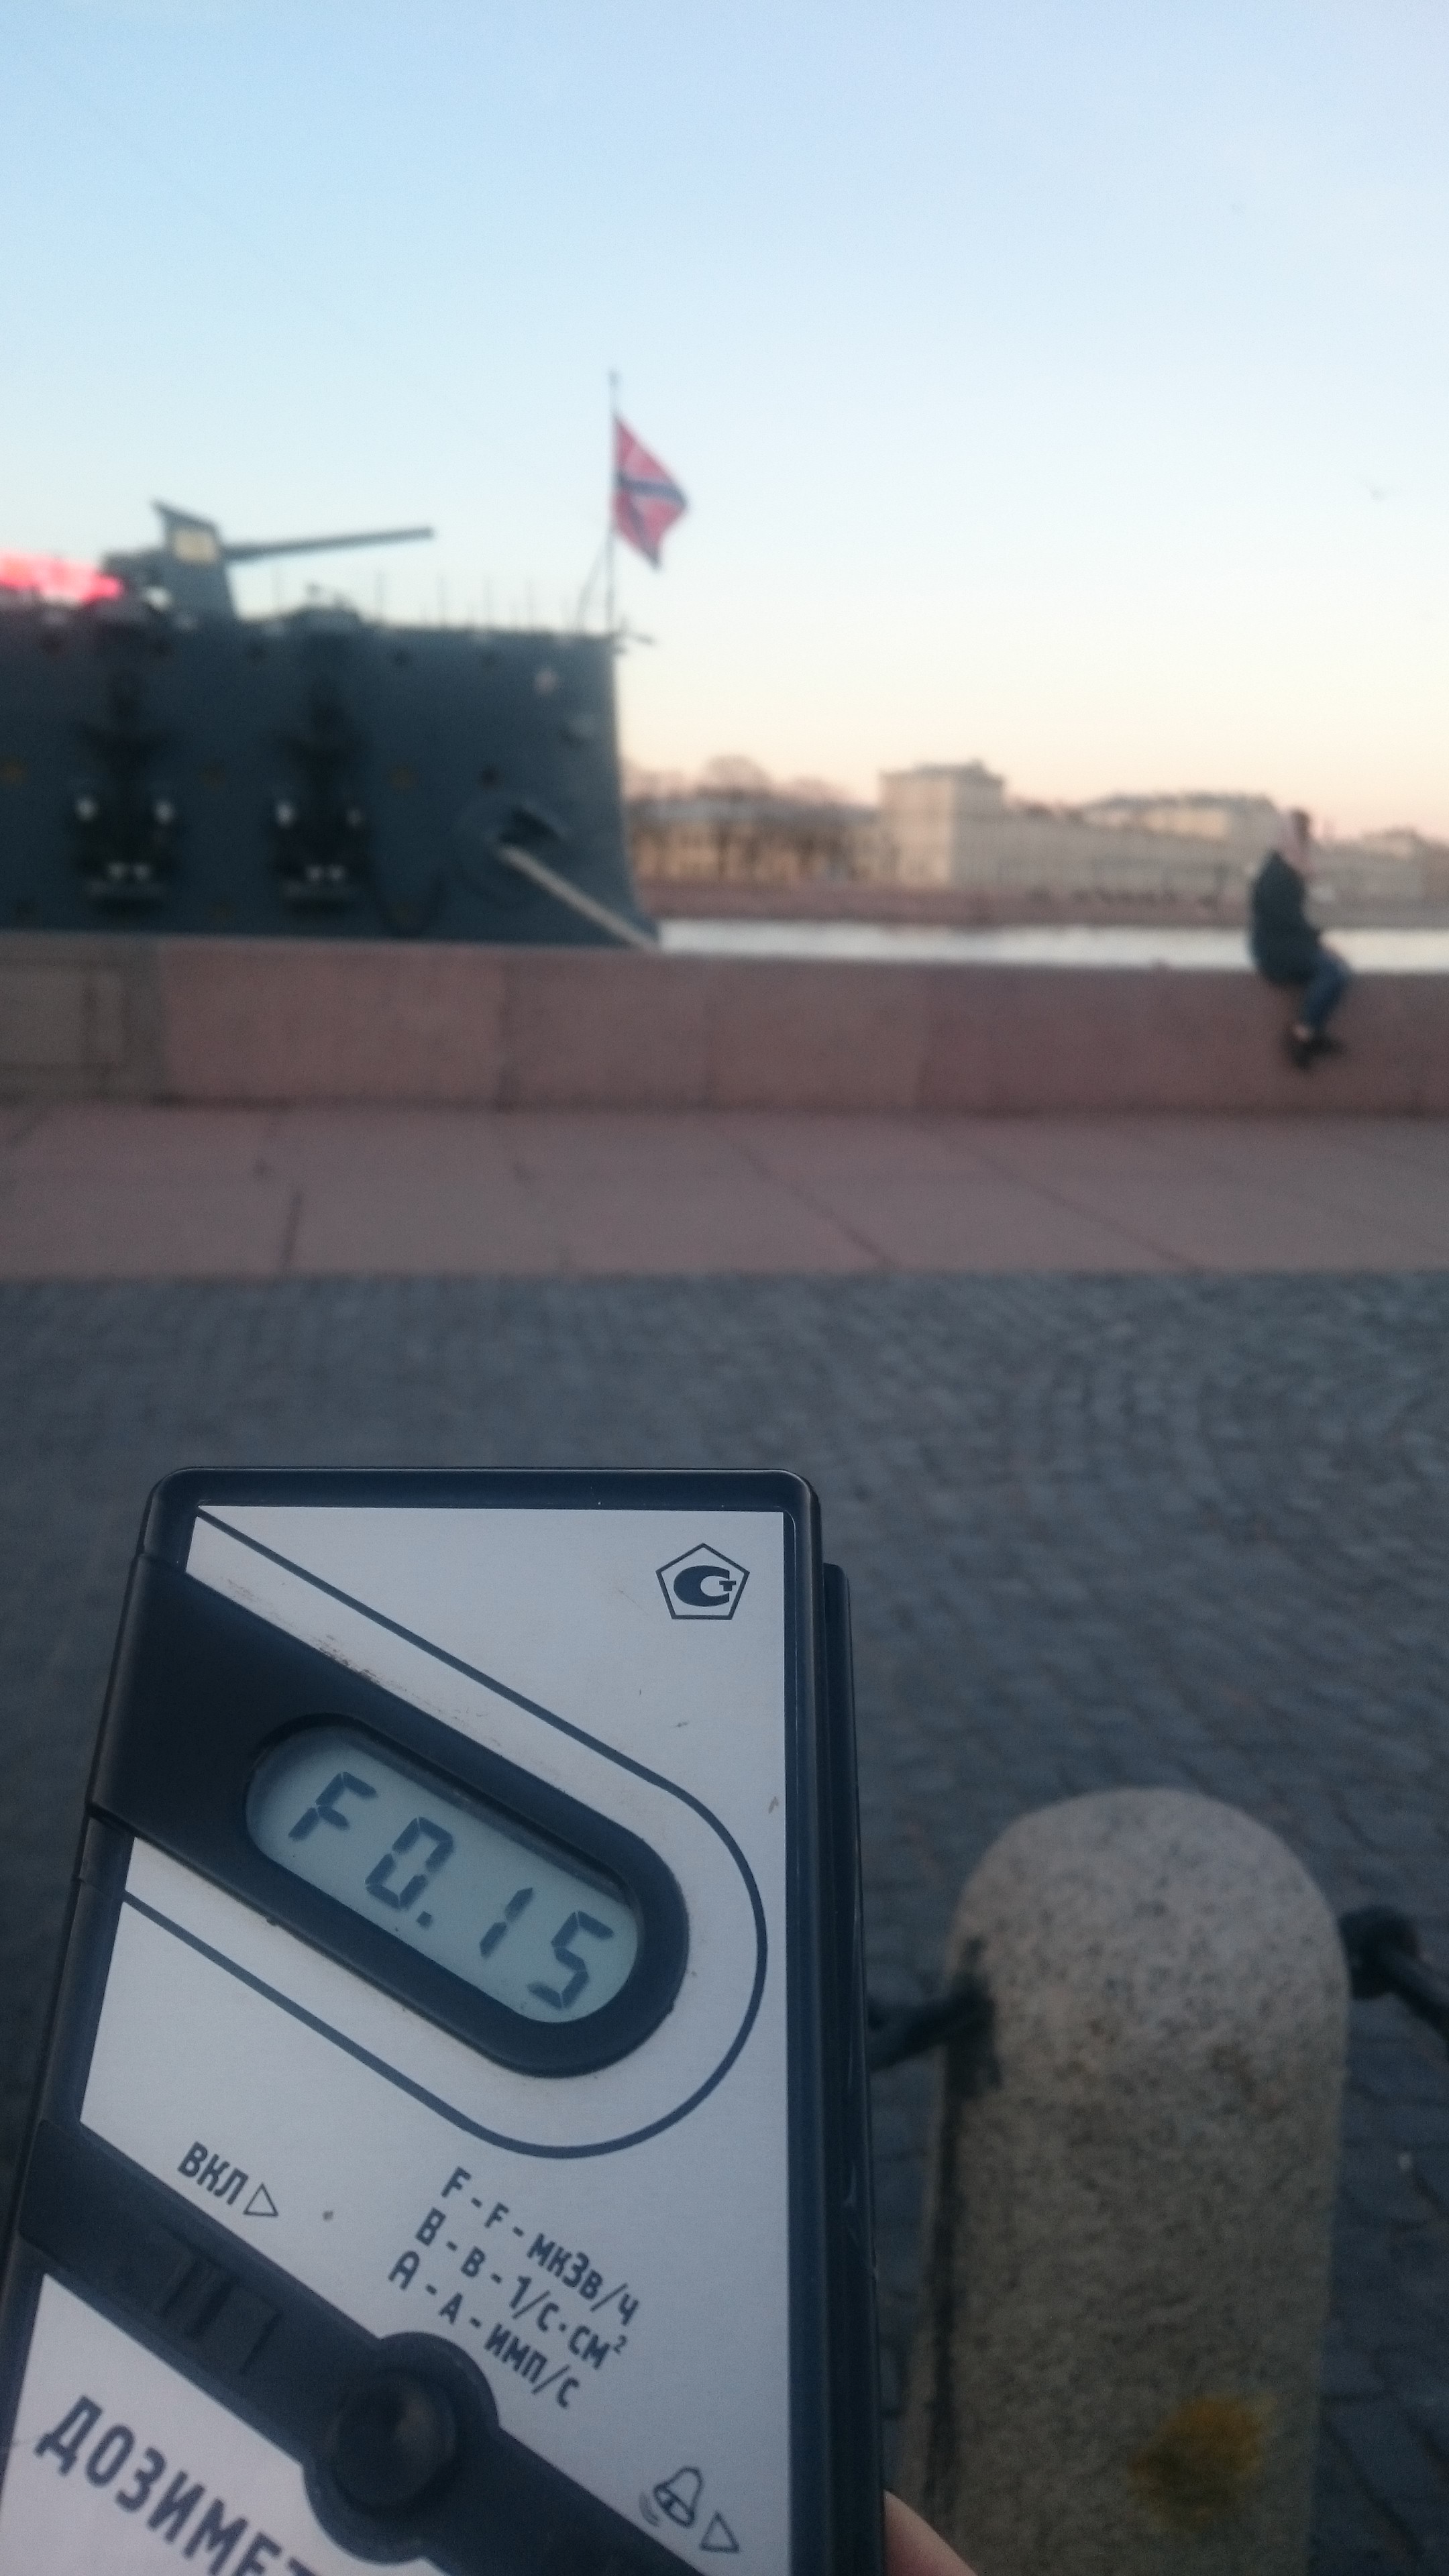 Точка измерения МЭД гамма-излучени на Петроградской набережной напротив крейсера Аврора в Санкт-Петербурге